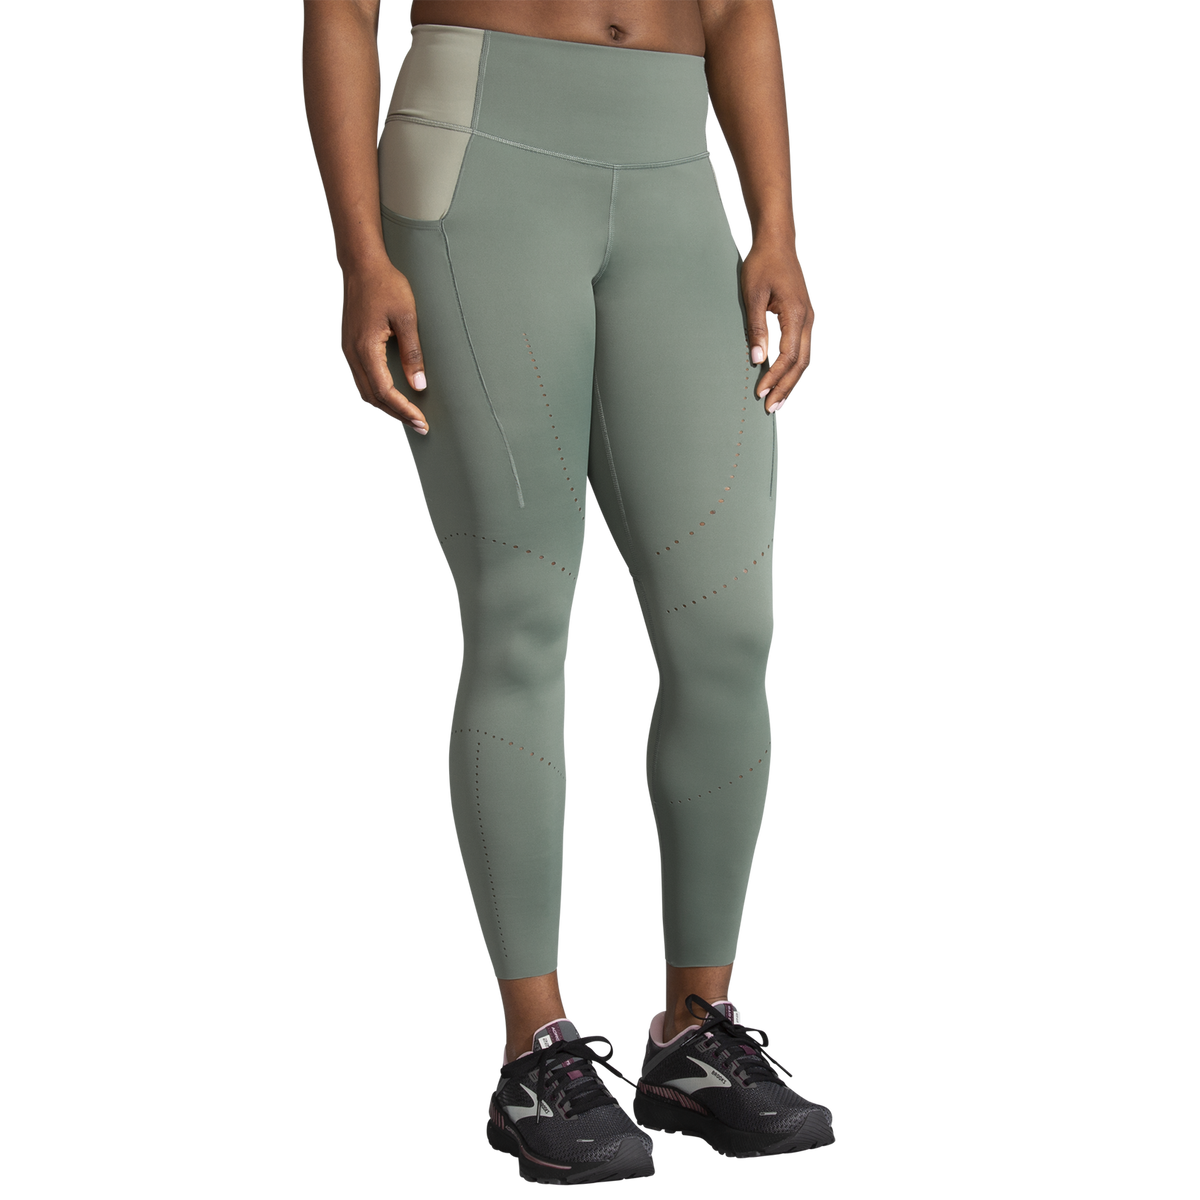 Brooks Run Within 7/8 Tight running leggings for women Black / Brooks / S